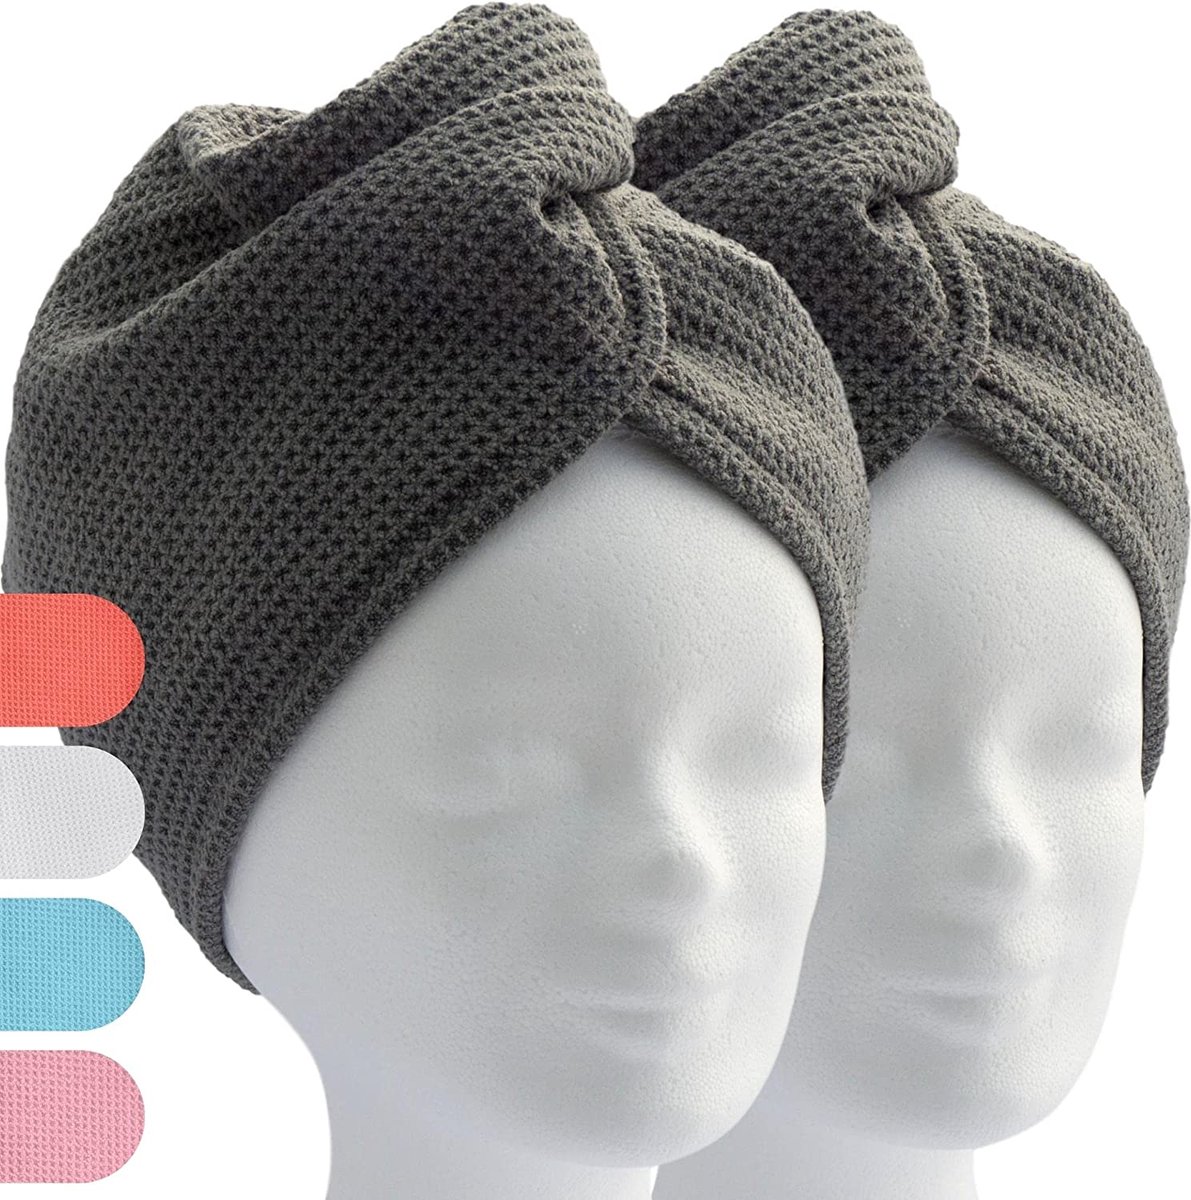 ELEXACARE haartulband, tulband handdoek met knoop (2 stuks, antraciet / grijs) microvezel handdoek voor hoofd en lang haar